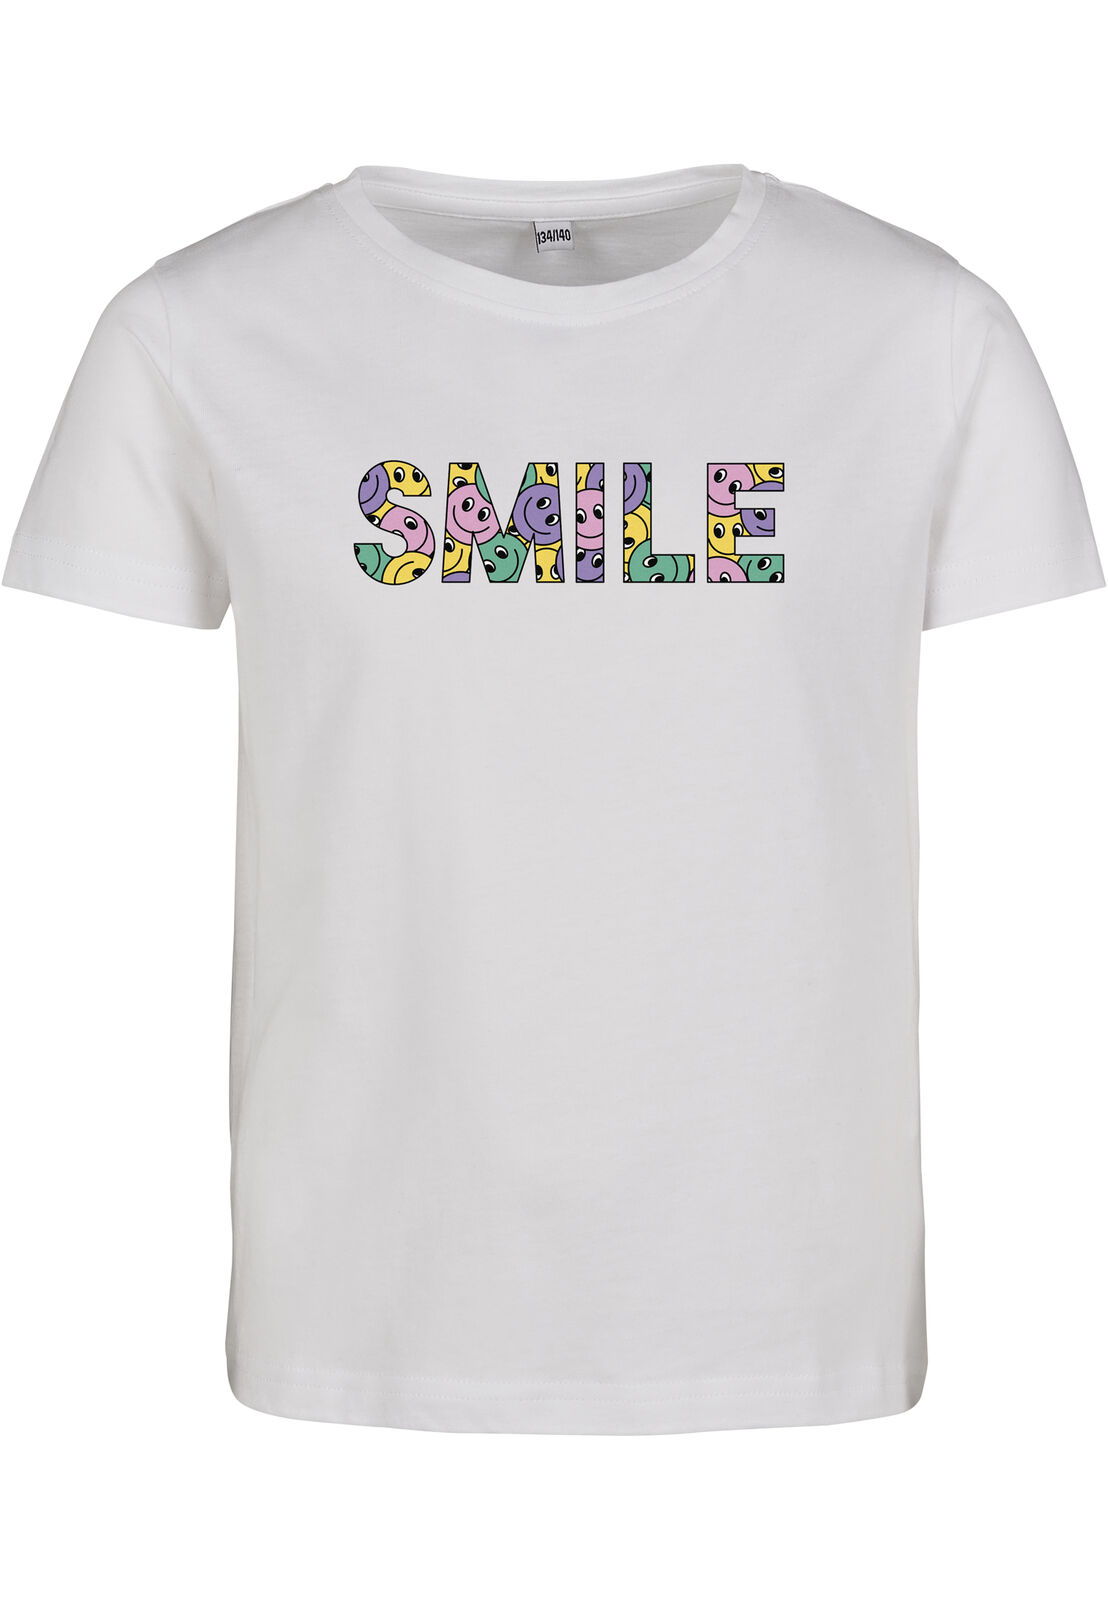 Mister Tee T-Shirt Kids Colorful Smile Short Sleeve Tee white | eBay